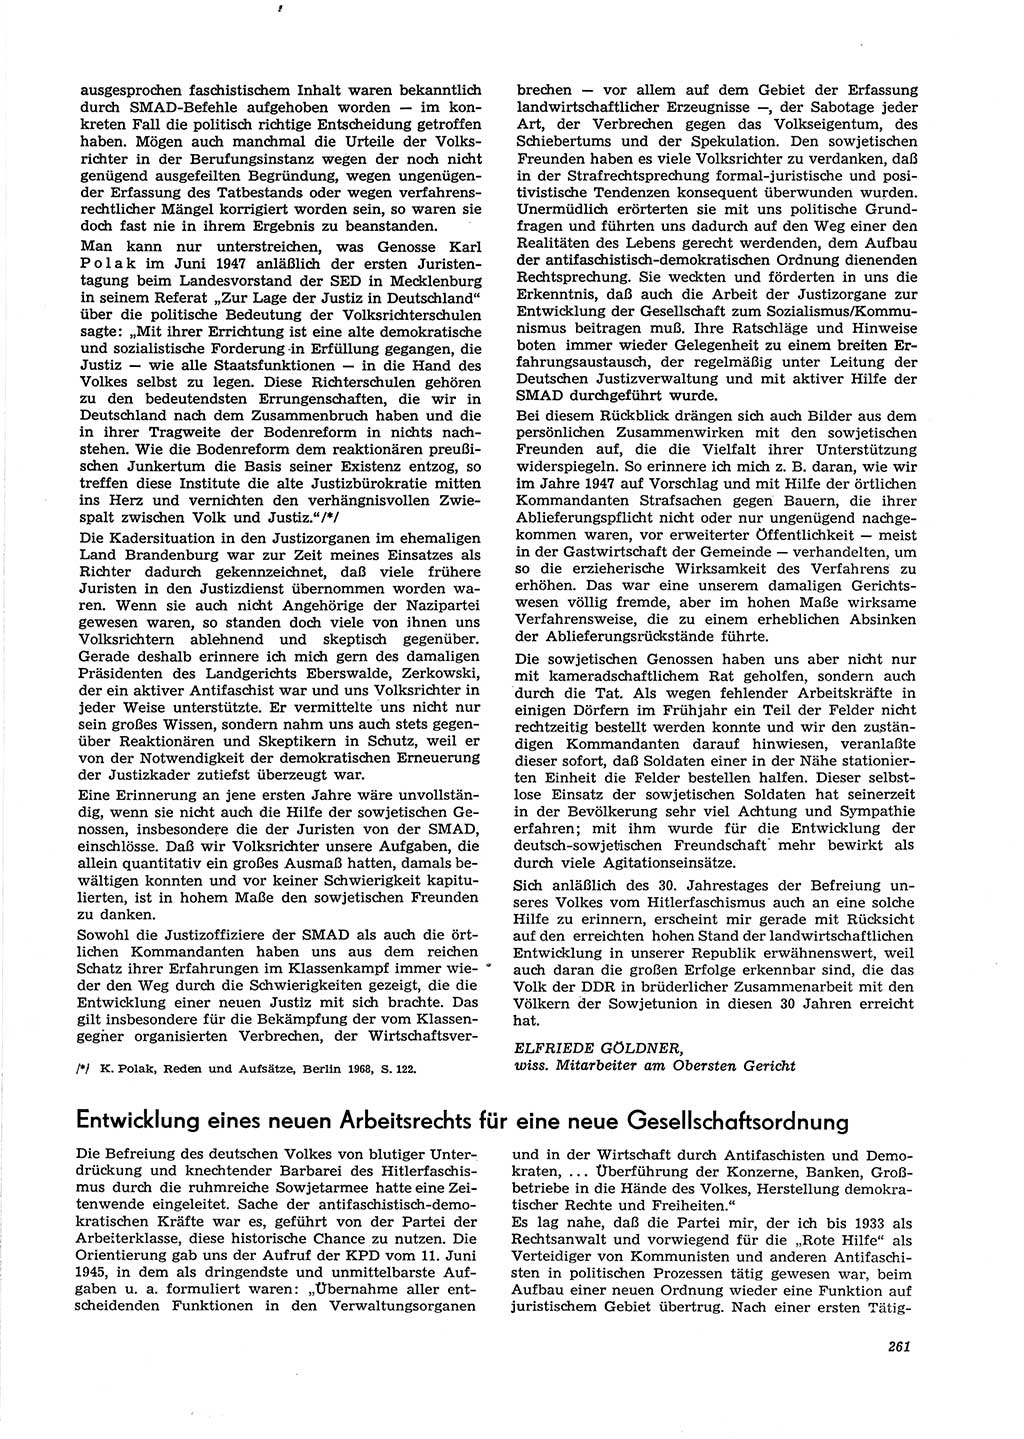 Neue Justiz (NJ), Zeitschrift für Recht und Rechtswissenschaft [Deutsche Demokratische Republik (DDR)], 29. Jahrgang 1975, Seite 261 (NJ DDR 1975, S. 261)